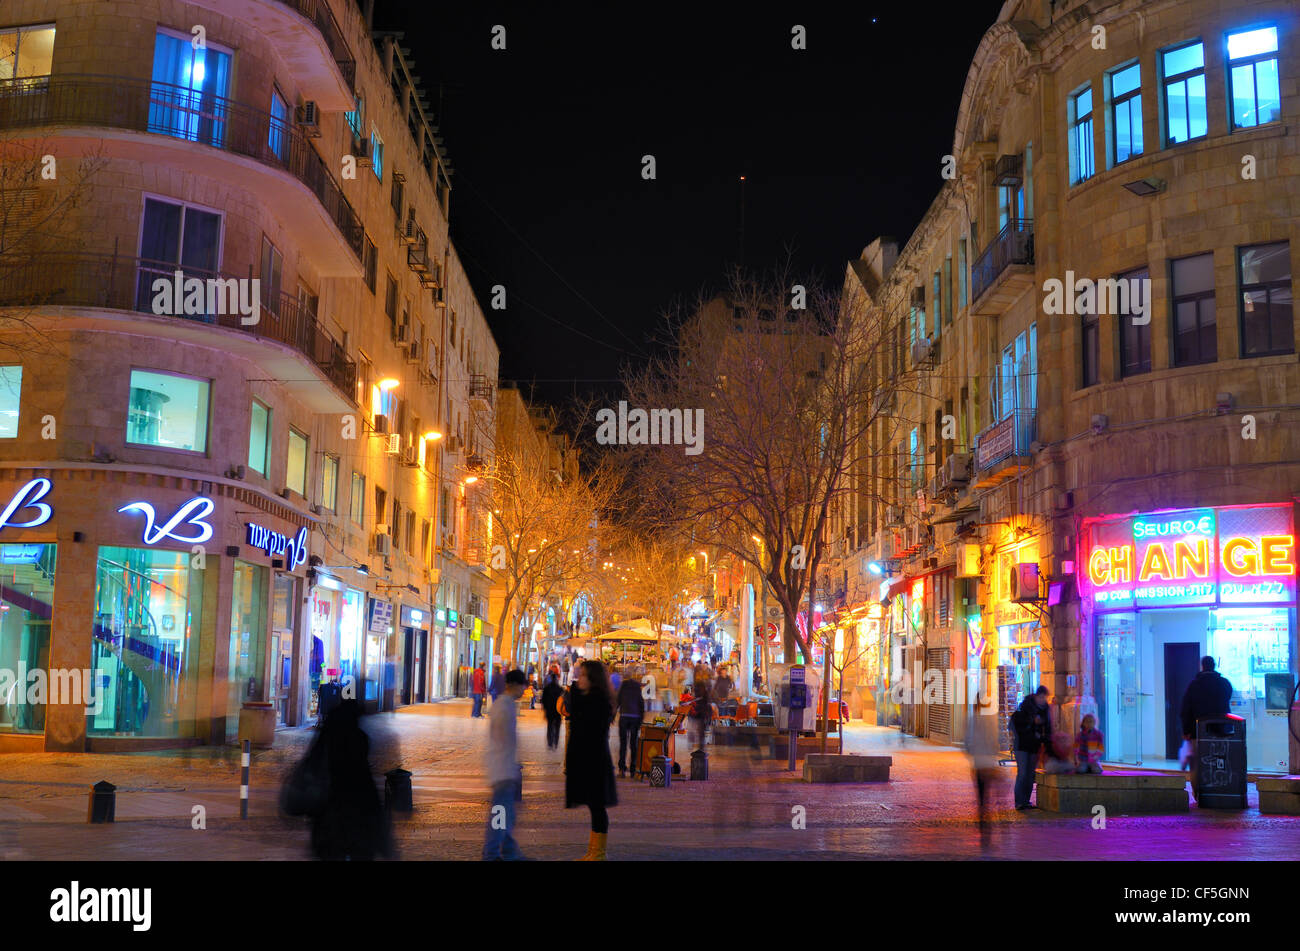 La calle Ben Yehuda, la vida nocturna y el principal destino turístico en Jerusalén, Israel. Foto de stock